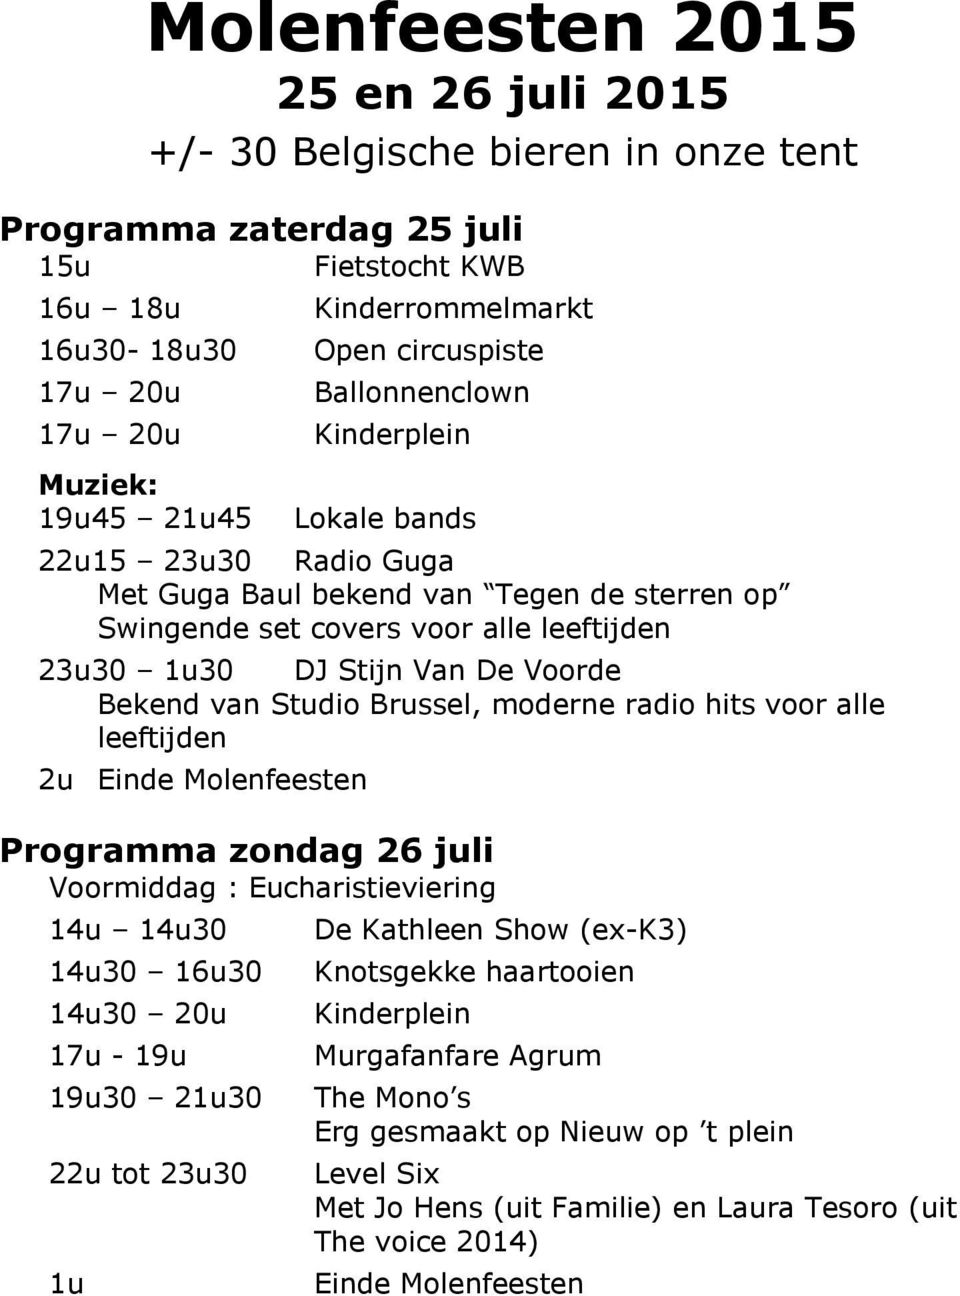 Bekend van Studio Brussel, moderne radio hits voor alle leeftijden 2u Einde Molenfeesten Programma zondag 26 juli Voormiddag : Eucharistieviering 14u 14u30 14u30 16u30 14u30 20u 17u - 19u 19u30 21u30